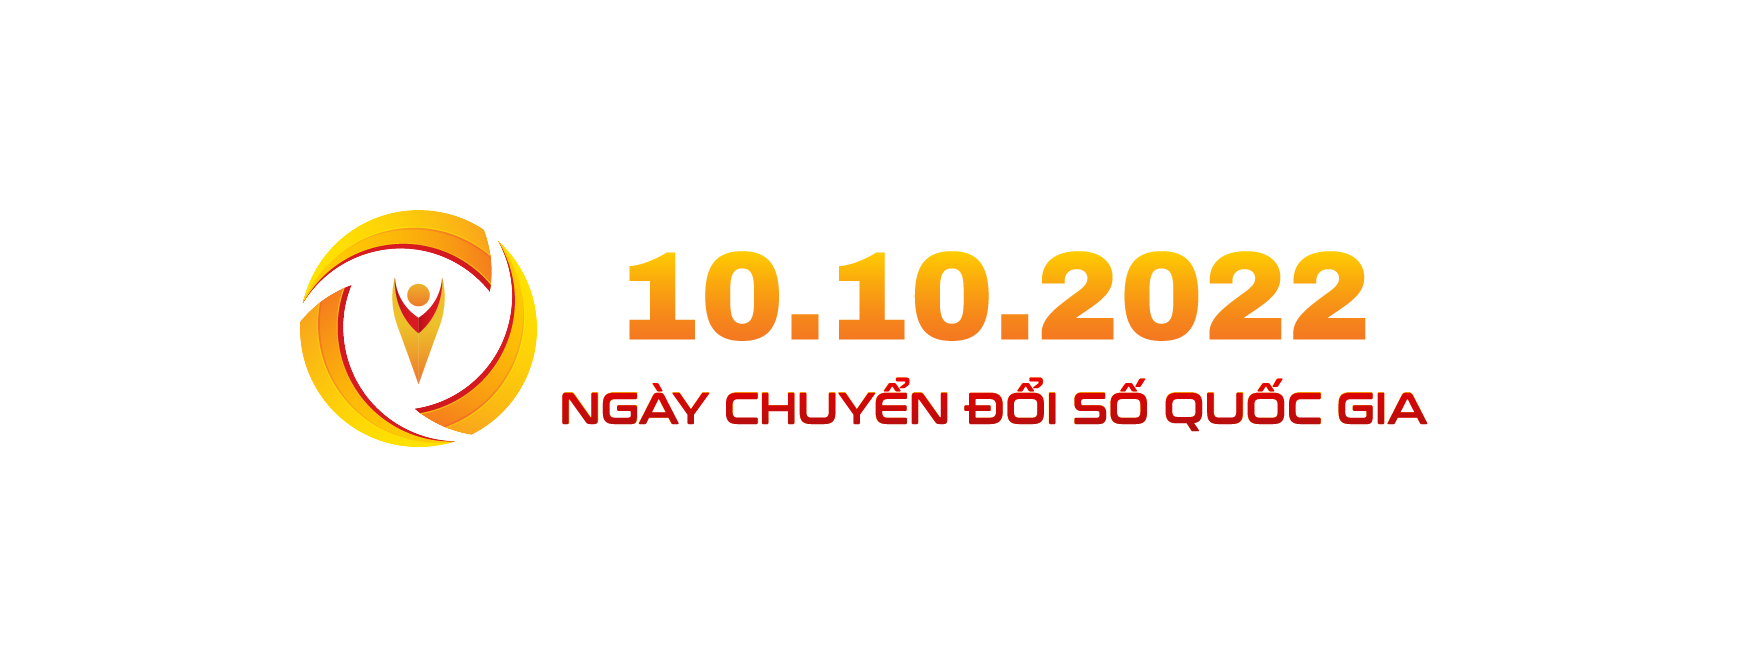 Bộ nhận diện Ngày Chuyển đổi số quốc gia 10/10 - Ảnh 7.